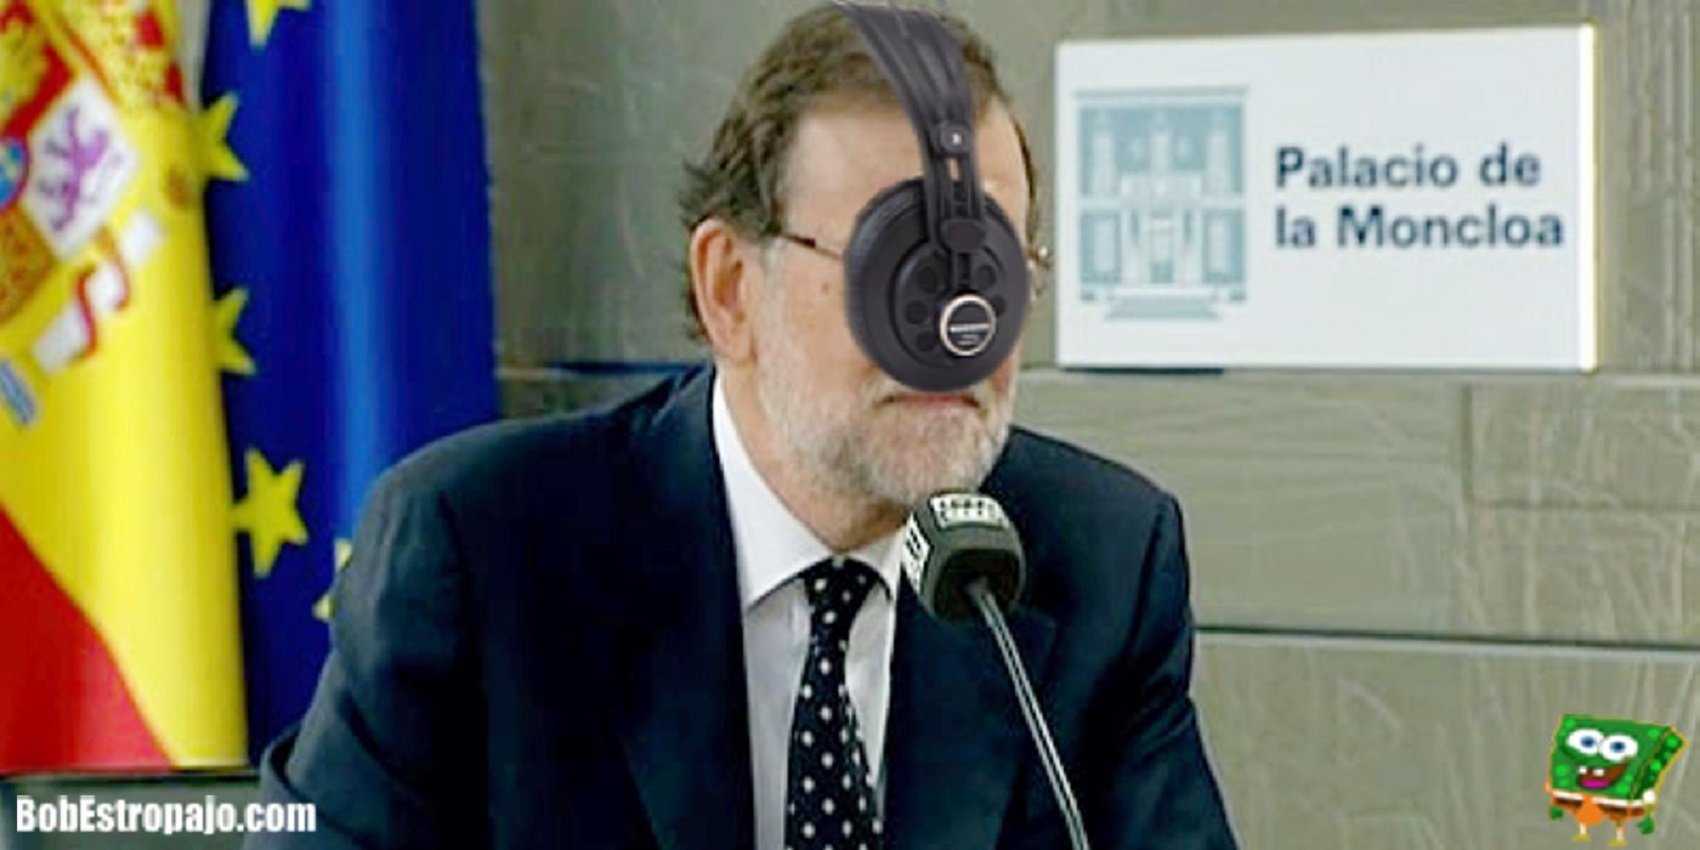 Entrada d'incògnit i frases mítiques... Així es mofa la xarxa del testimoni de Rajoy